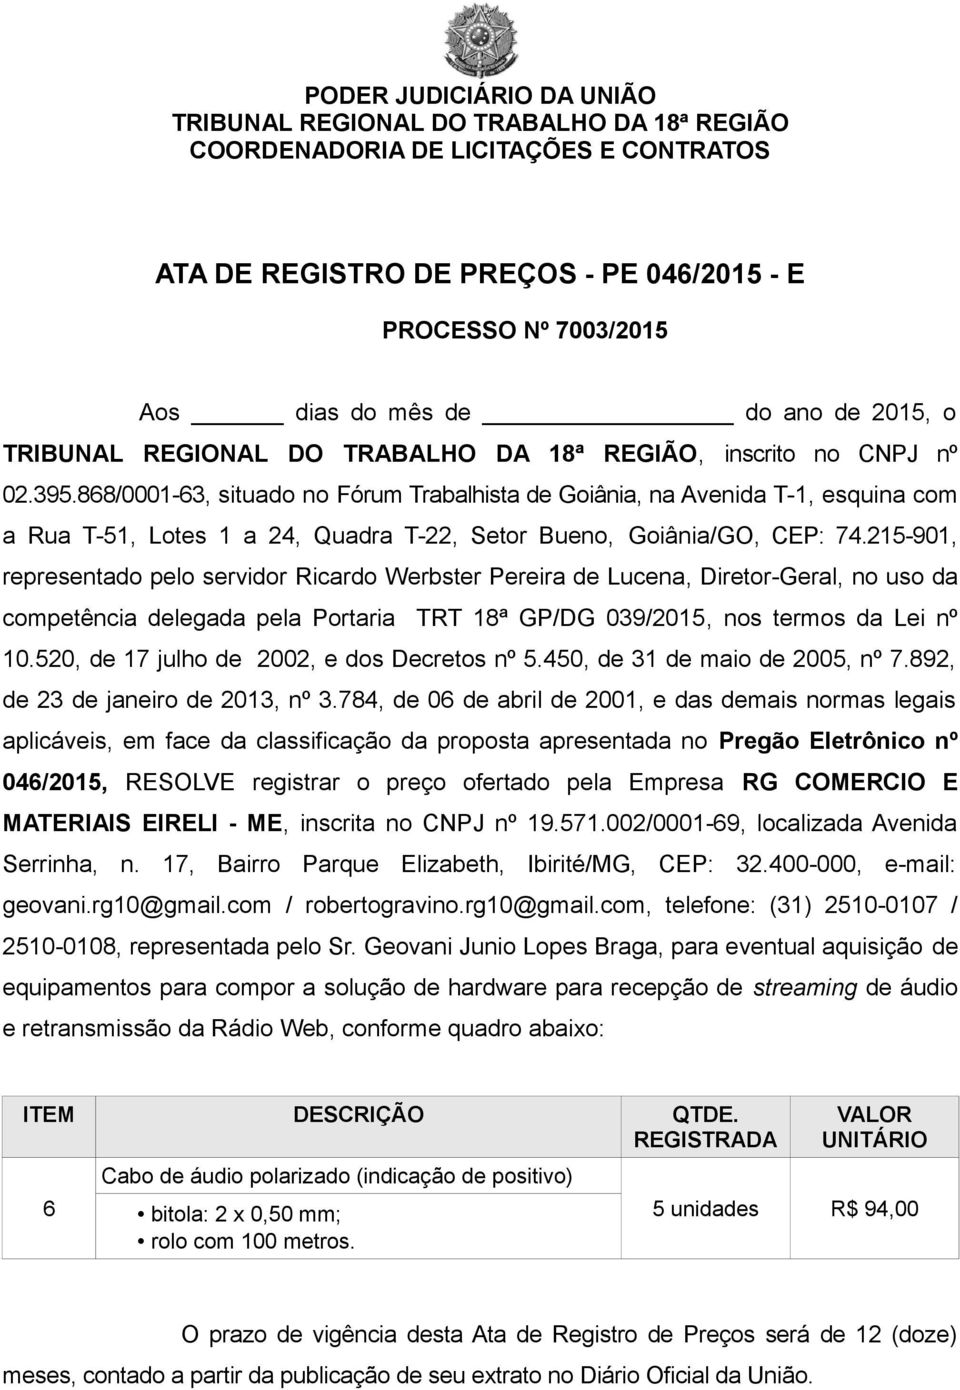 215-901, representado pelo servidor Ricardo Werbster Pereira de Lucena, Diretor-Geral, no uso da competência delegada pela Portaria TRT 18ª GP/DG 039/2015, nos termos da Lei nº 10.